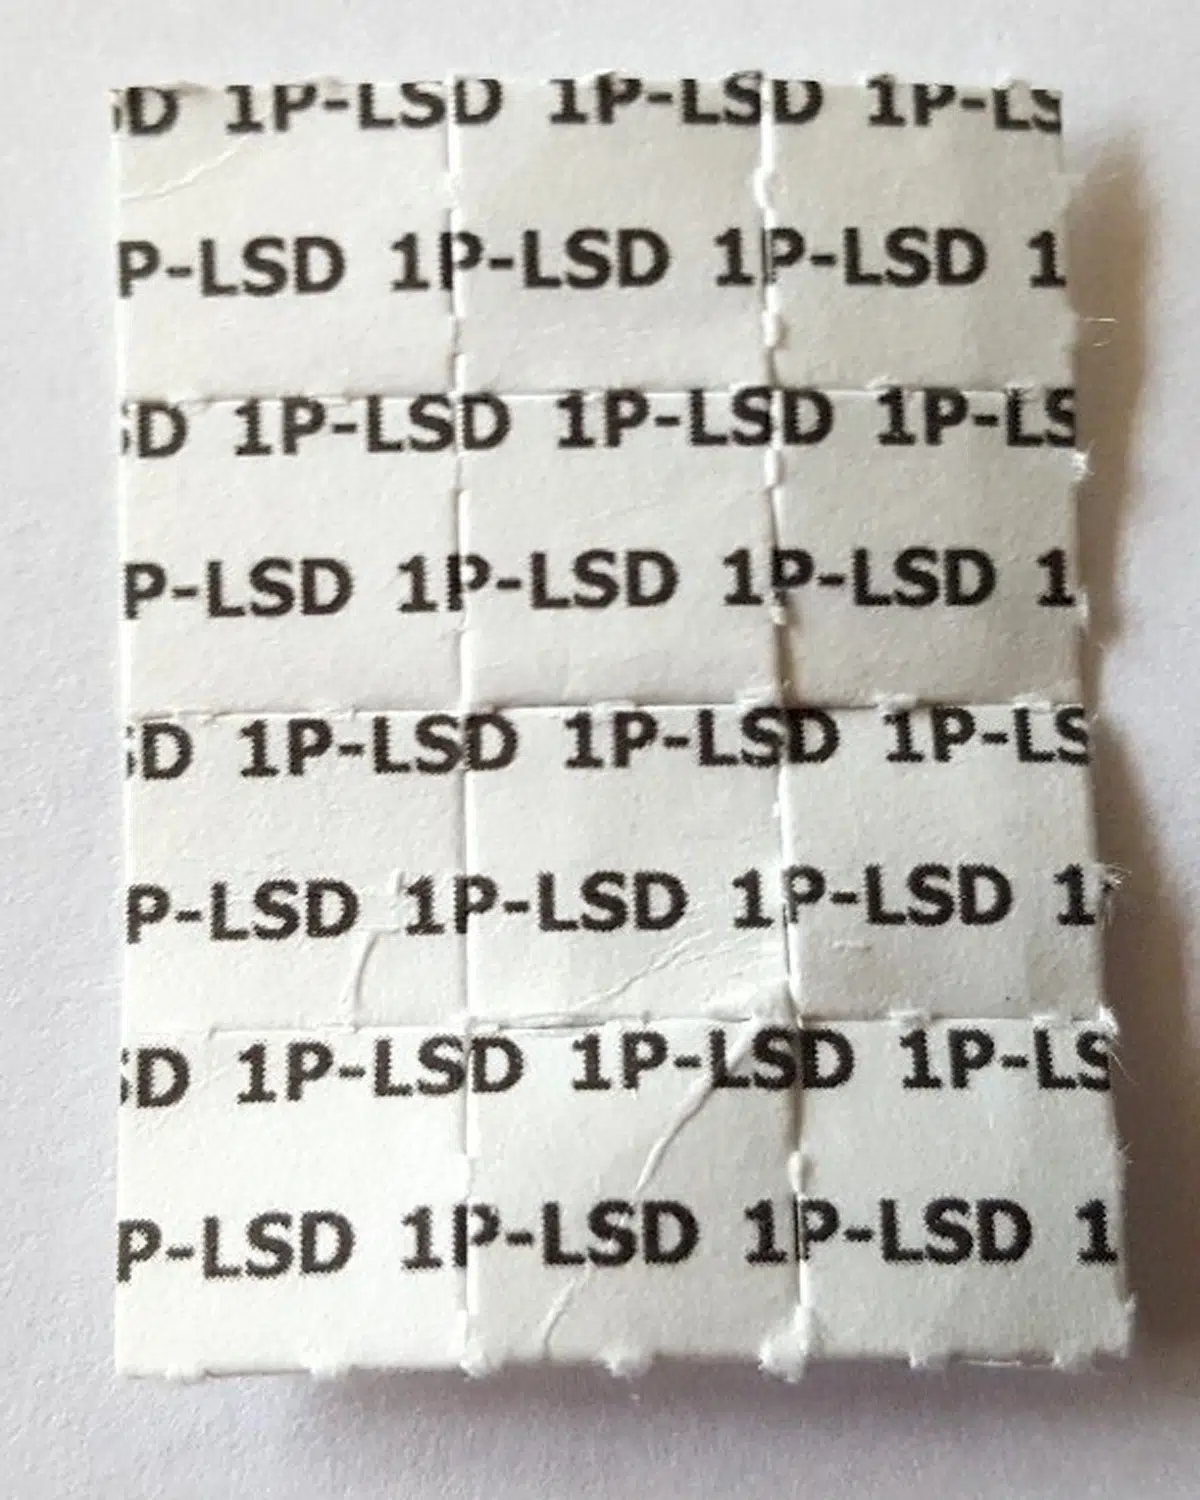 1P-LSD Blotter paper